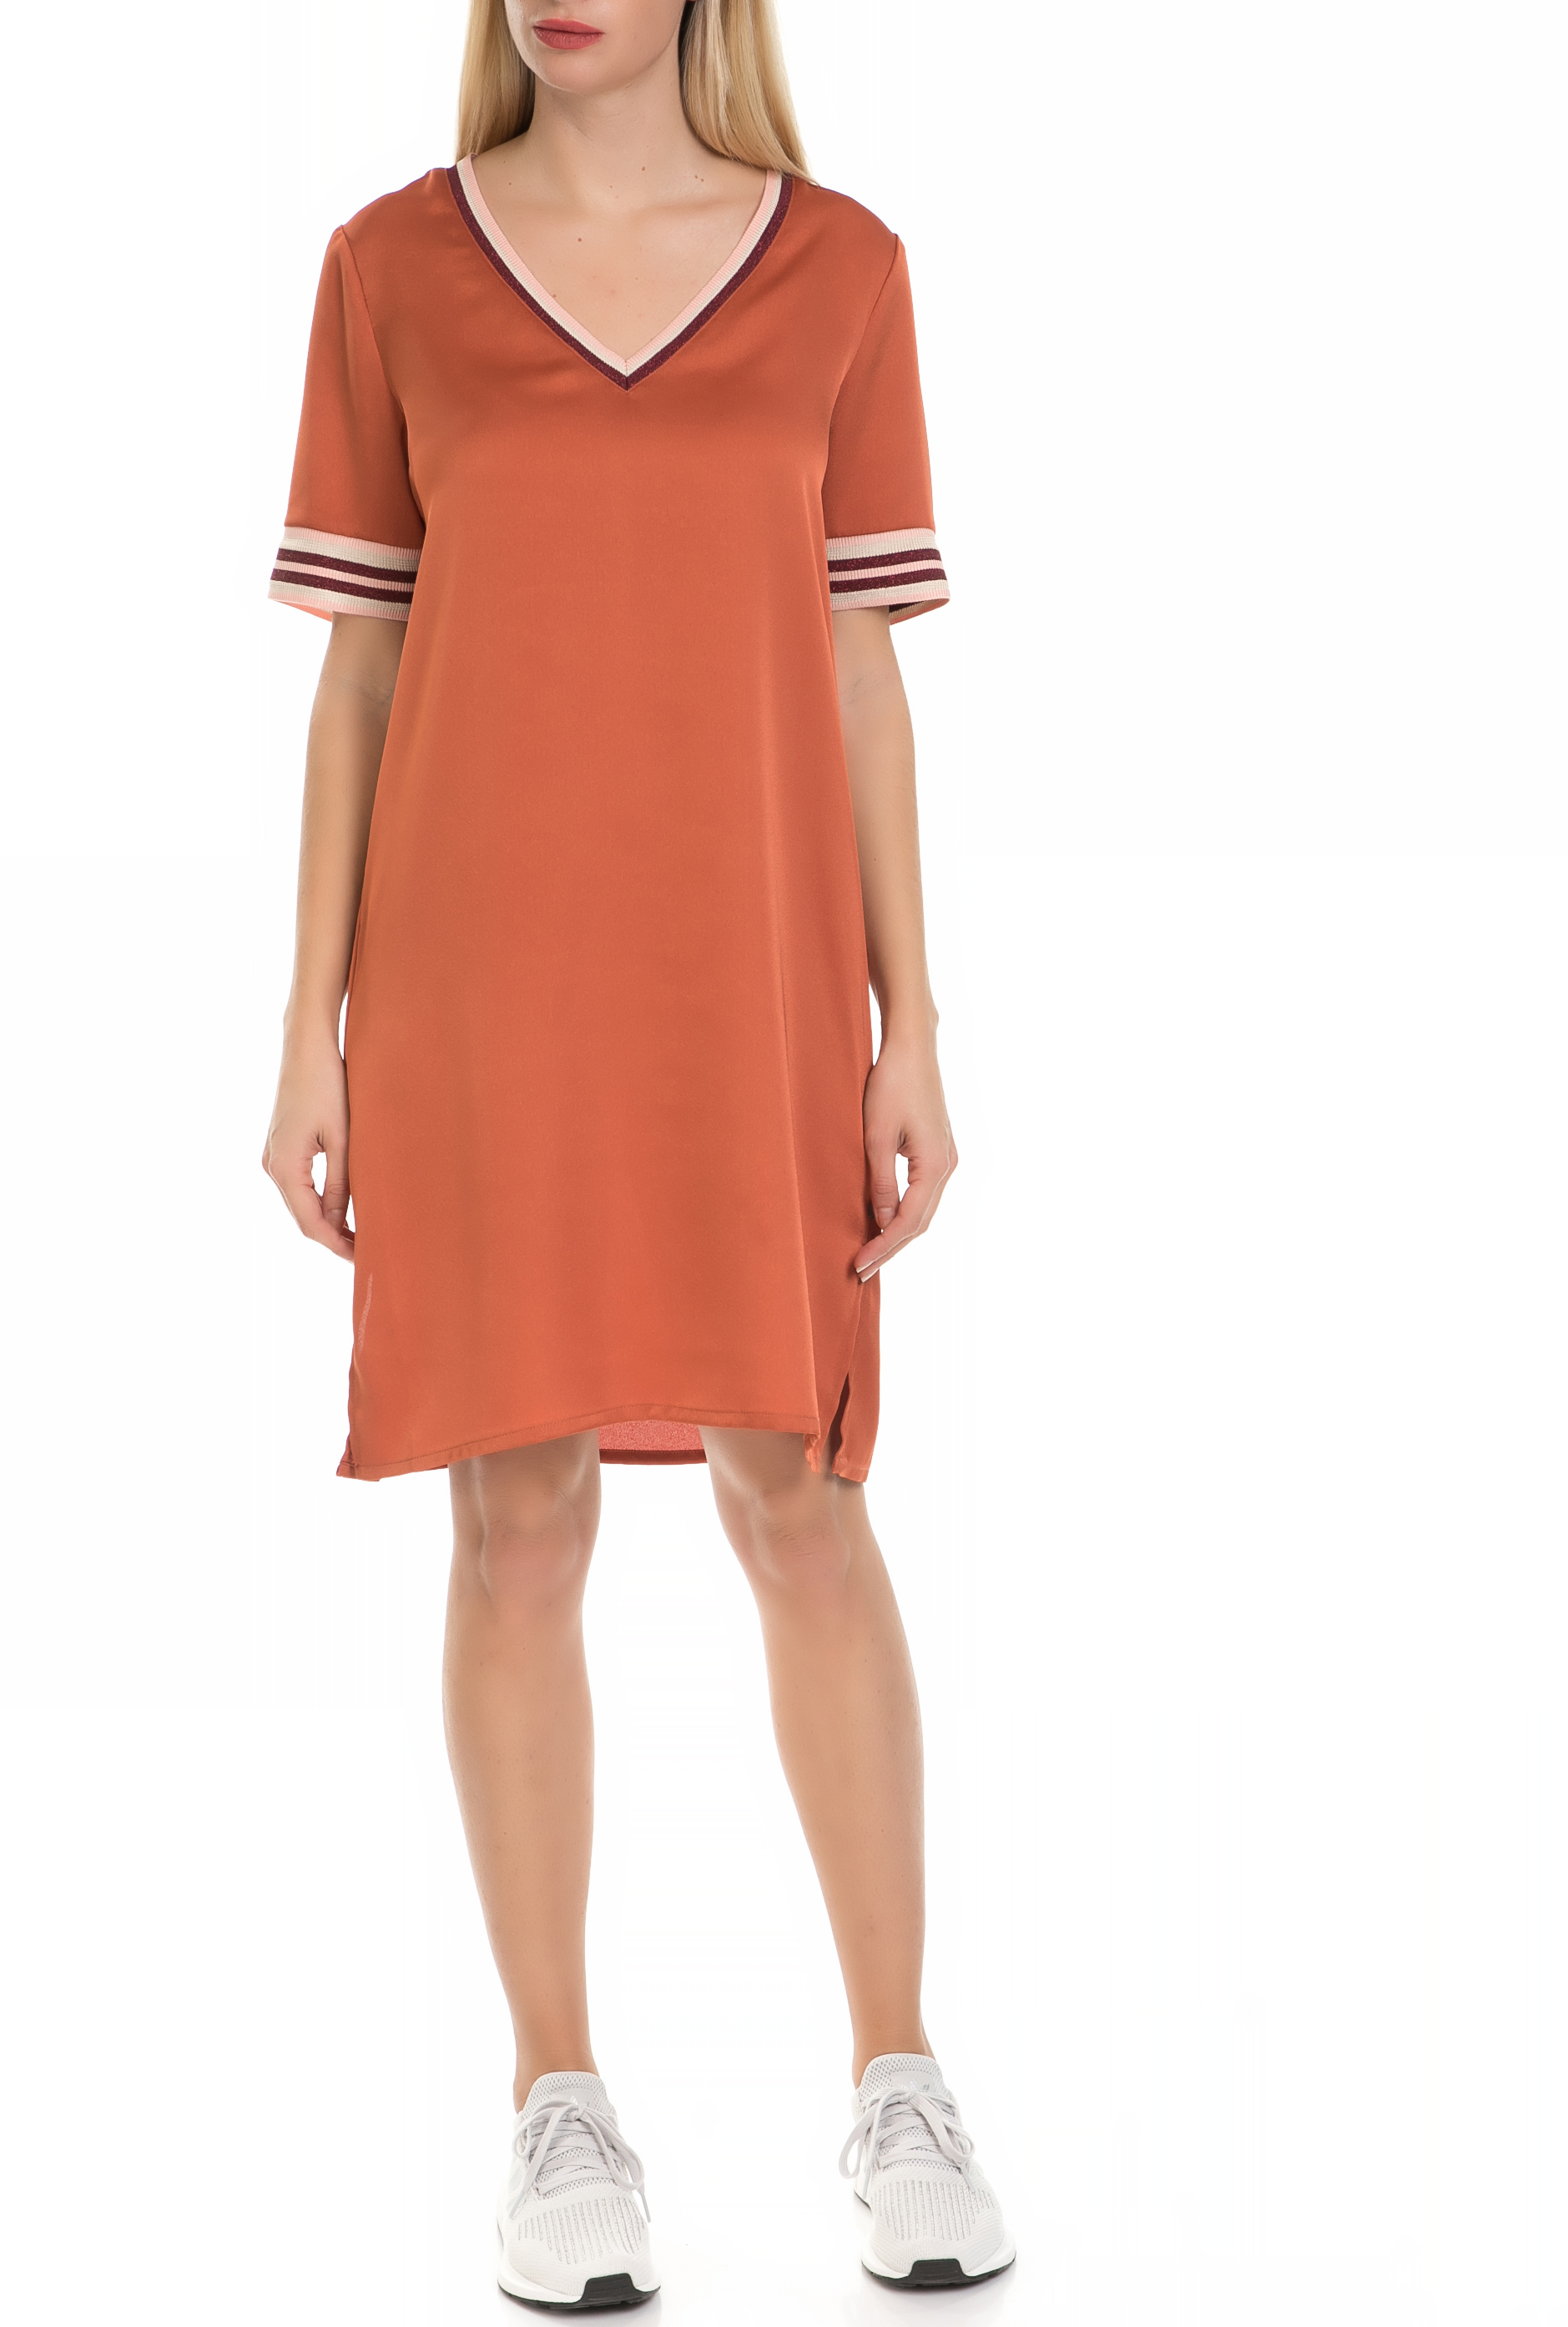 Γυναικεία/Ρούχα/Φορέματα/Μίνι SCOTCH & SODA - Γυναικείό φόρεμα SCOTCH & SODA πορτοκαλί